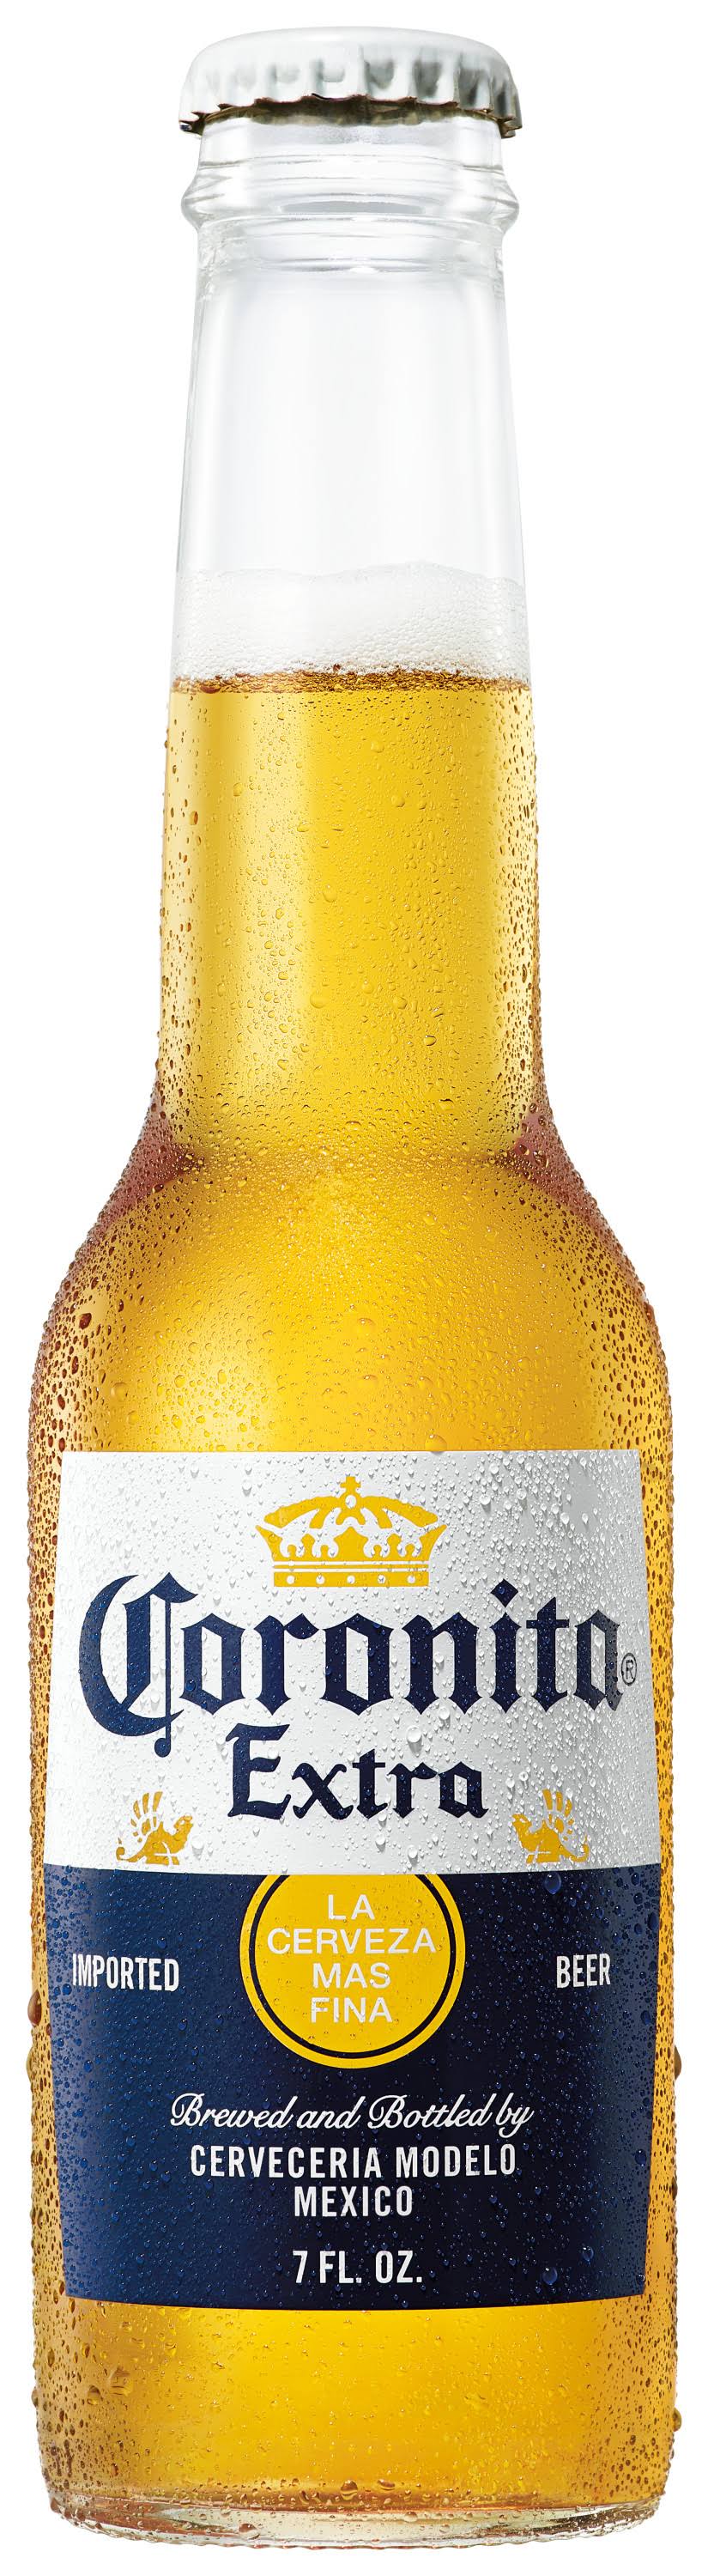 Coronita Extra Beer - 7 fl oz